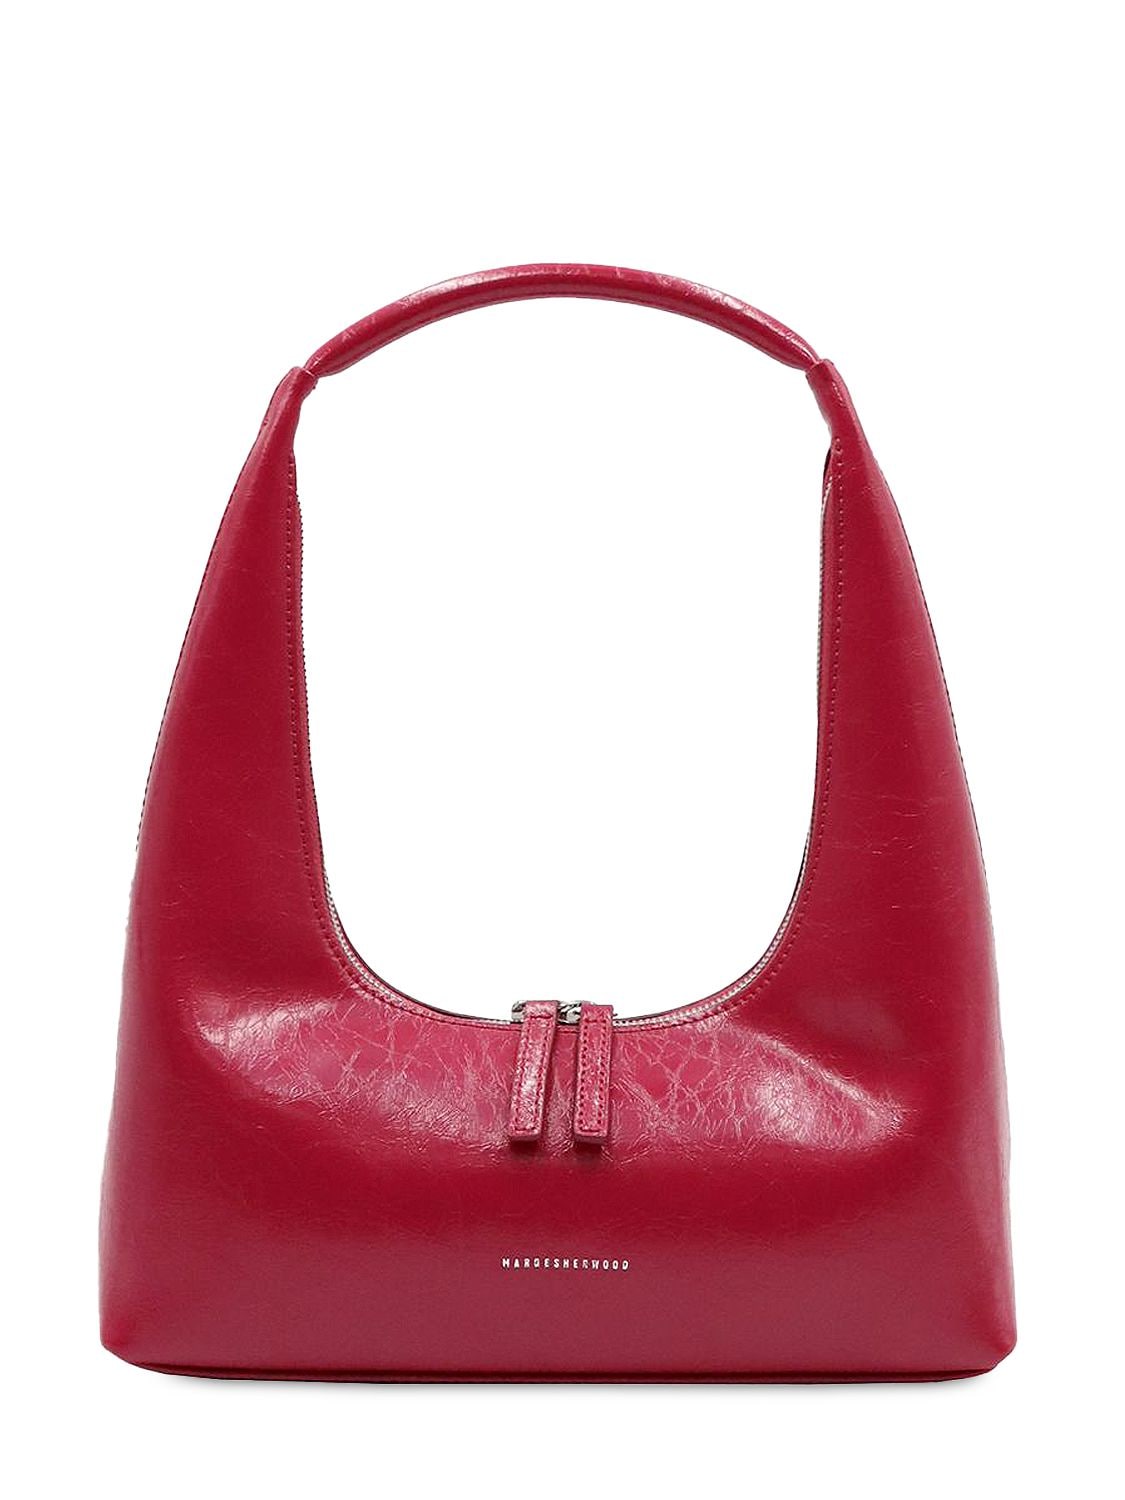 Marge Sherwood Bessette Shoulder Bag in Red